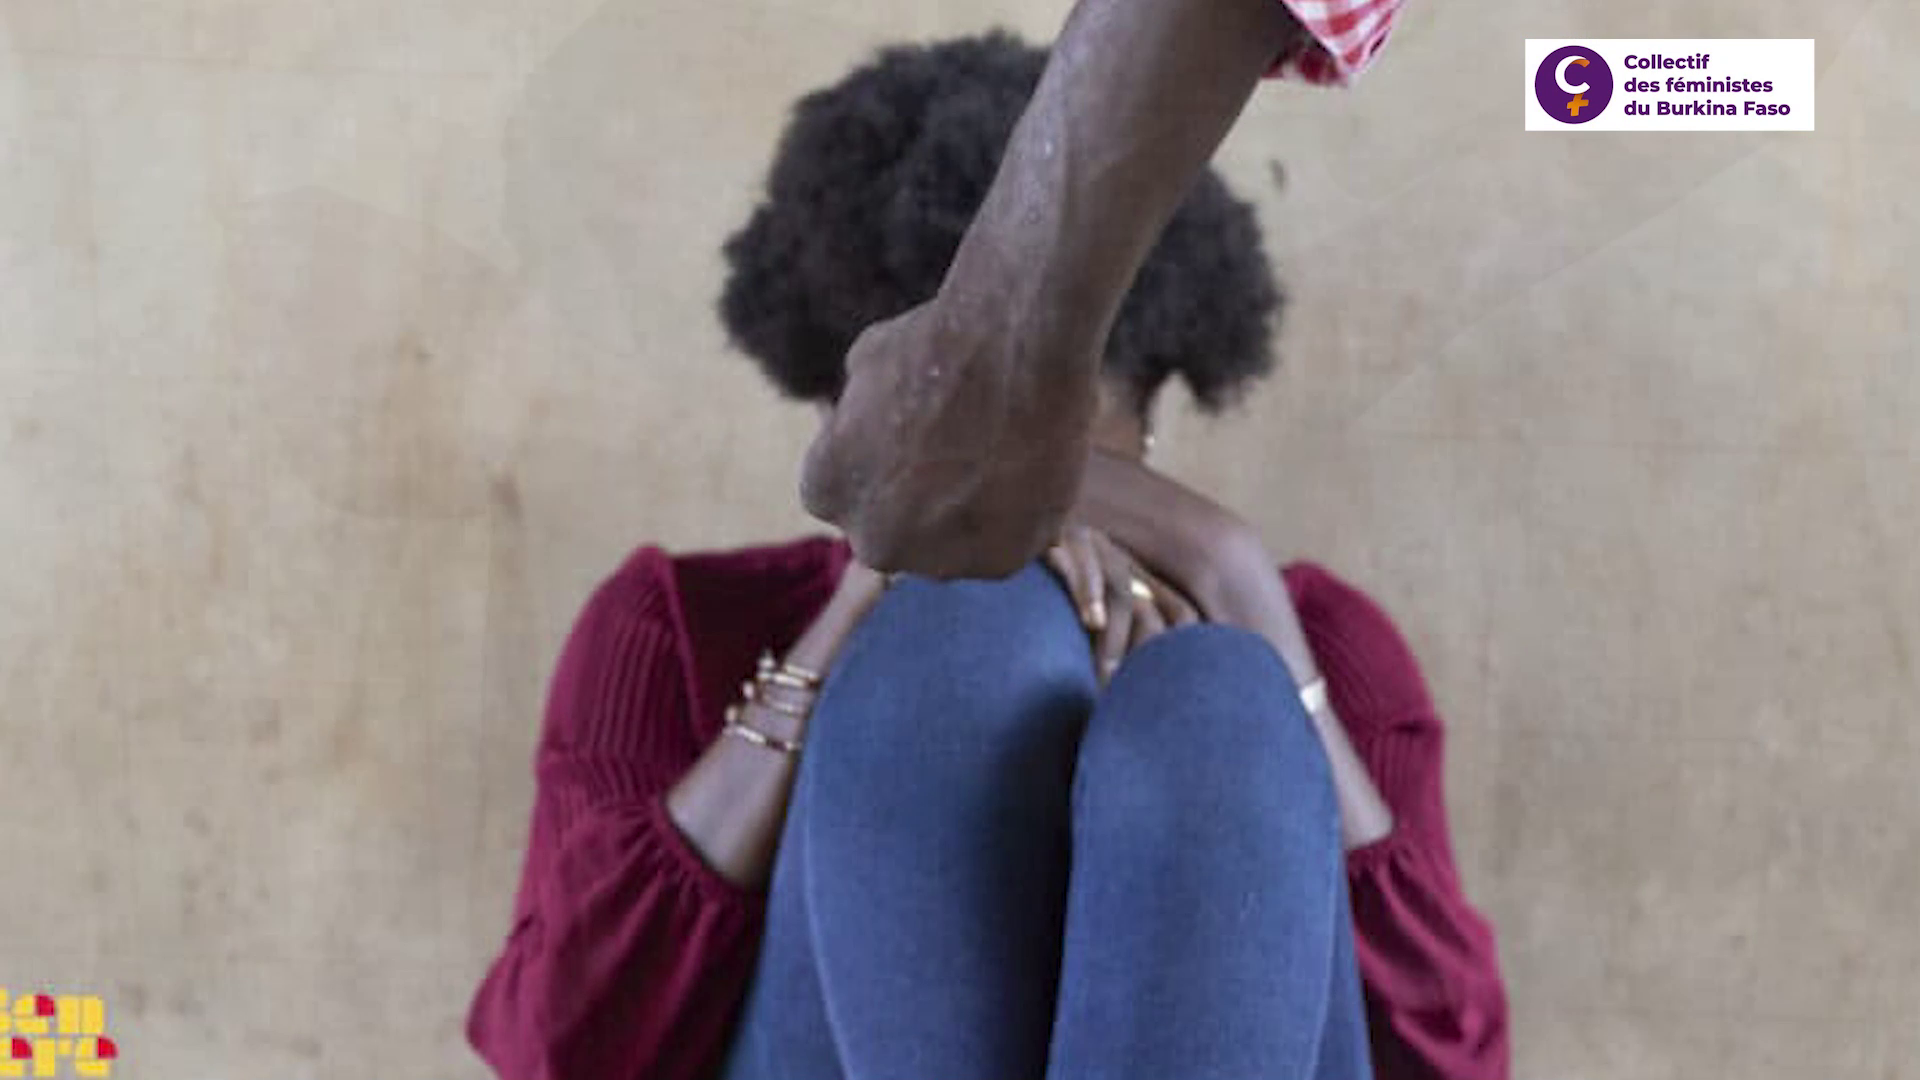 Violence basée sur le genre : Message du collectif des féministes du Burkina Faso